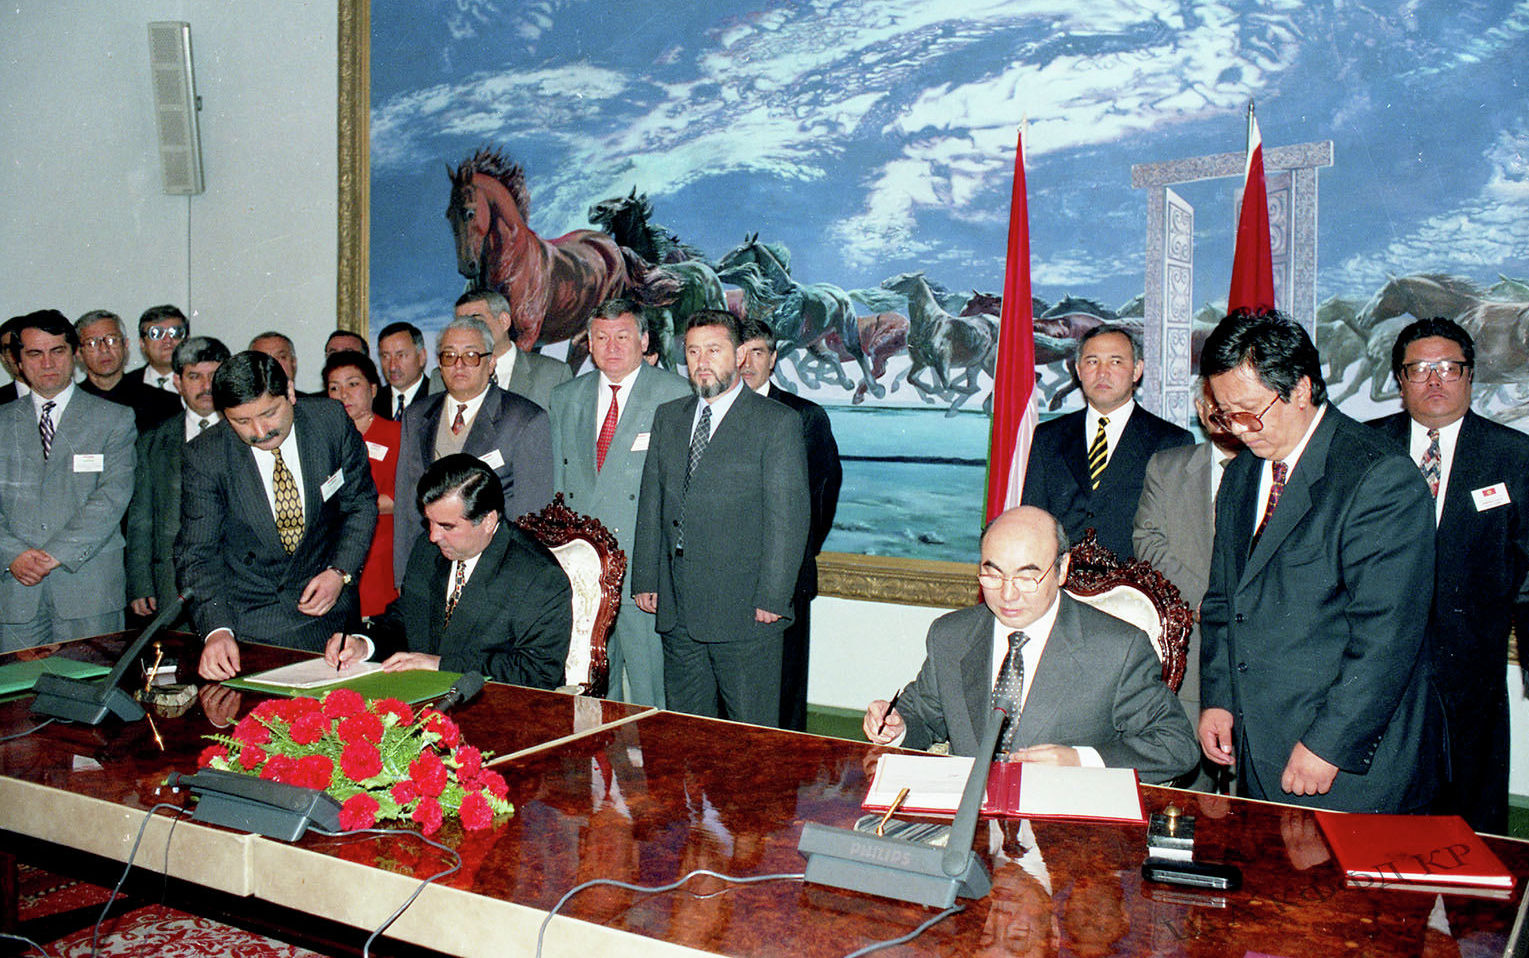 Президенты Кыргызстана Аскар Акаев и Таджикистана Эмомали Рахмонов во время подписания договора в Бишкеке. Май 1998 года